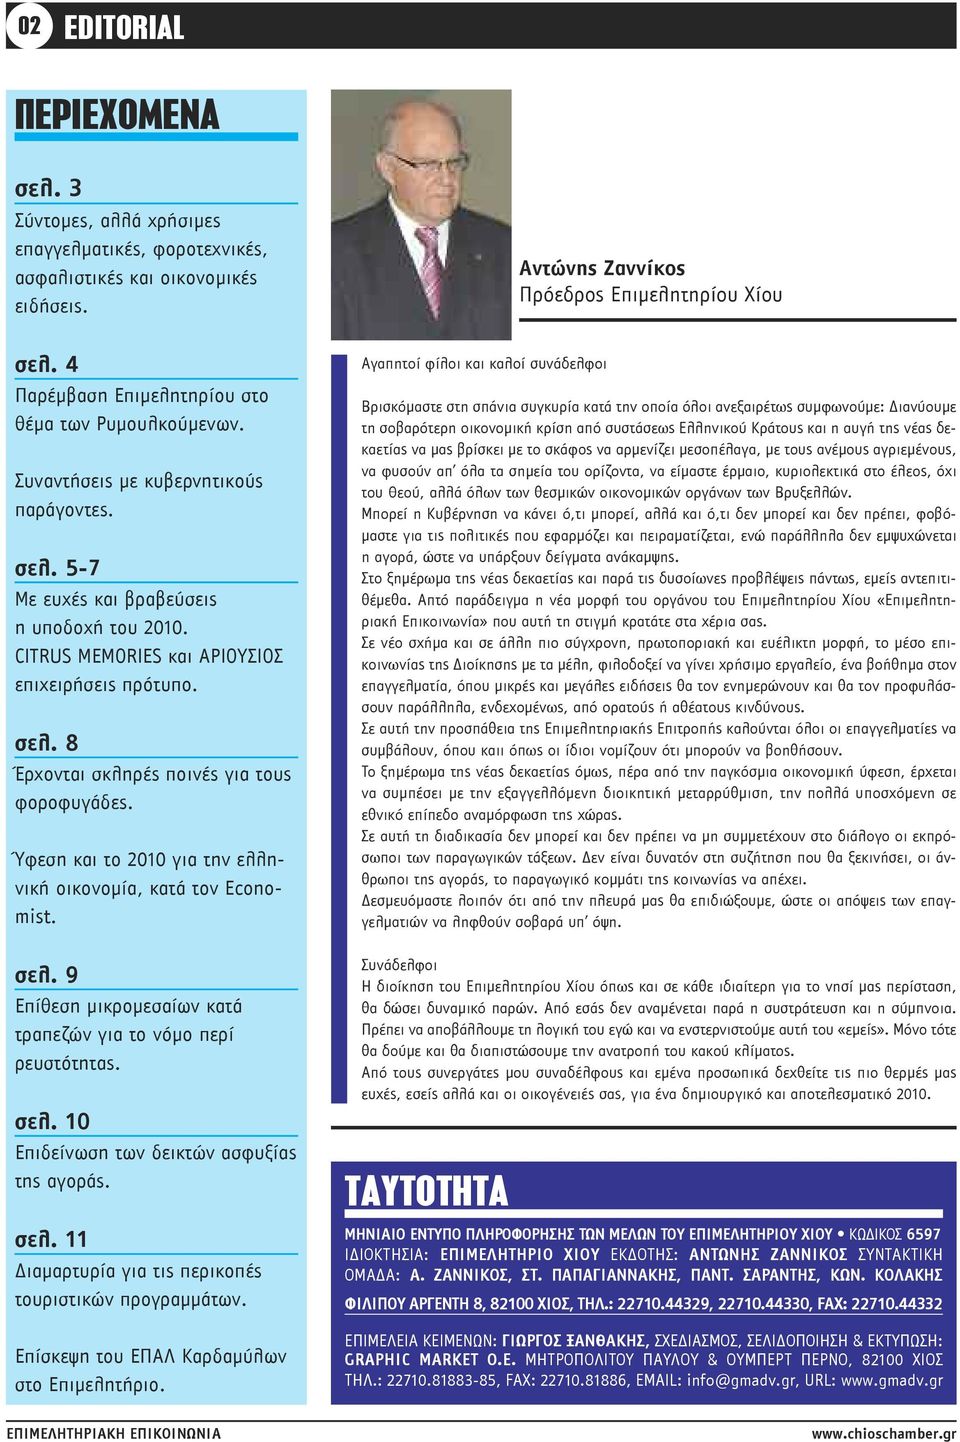 Ύφεση και το 2010 για την ελληνική οικονομία, κατά τον Economist. σελ. 9 Επίθεση μικρομεσαίων κατά τραπεζών για το νόμο περί ρευστότητας. σελ. 10 Επιδείνωση των δεικτών ασφυξίας της αγοράς. σελ. 11 Διαμαρτυρία για τις περικοπές τουριστικών προγραμμάτων.